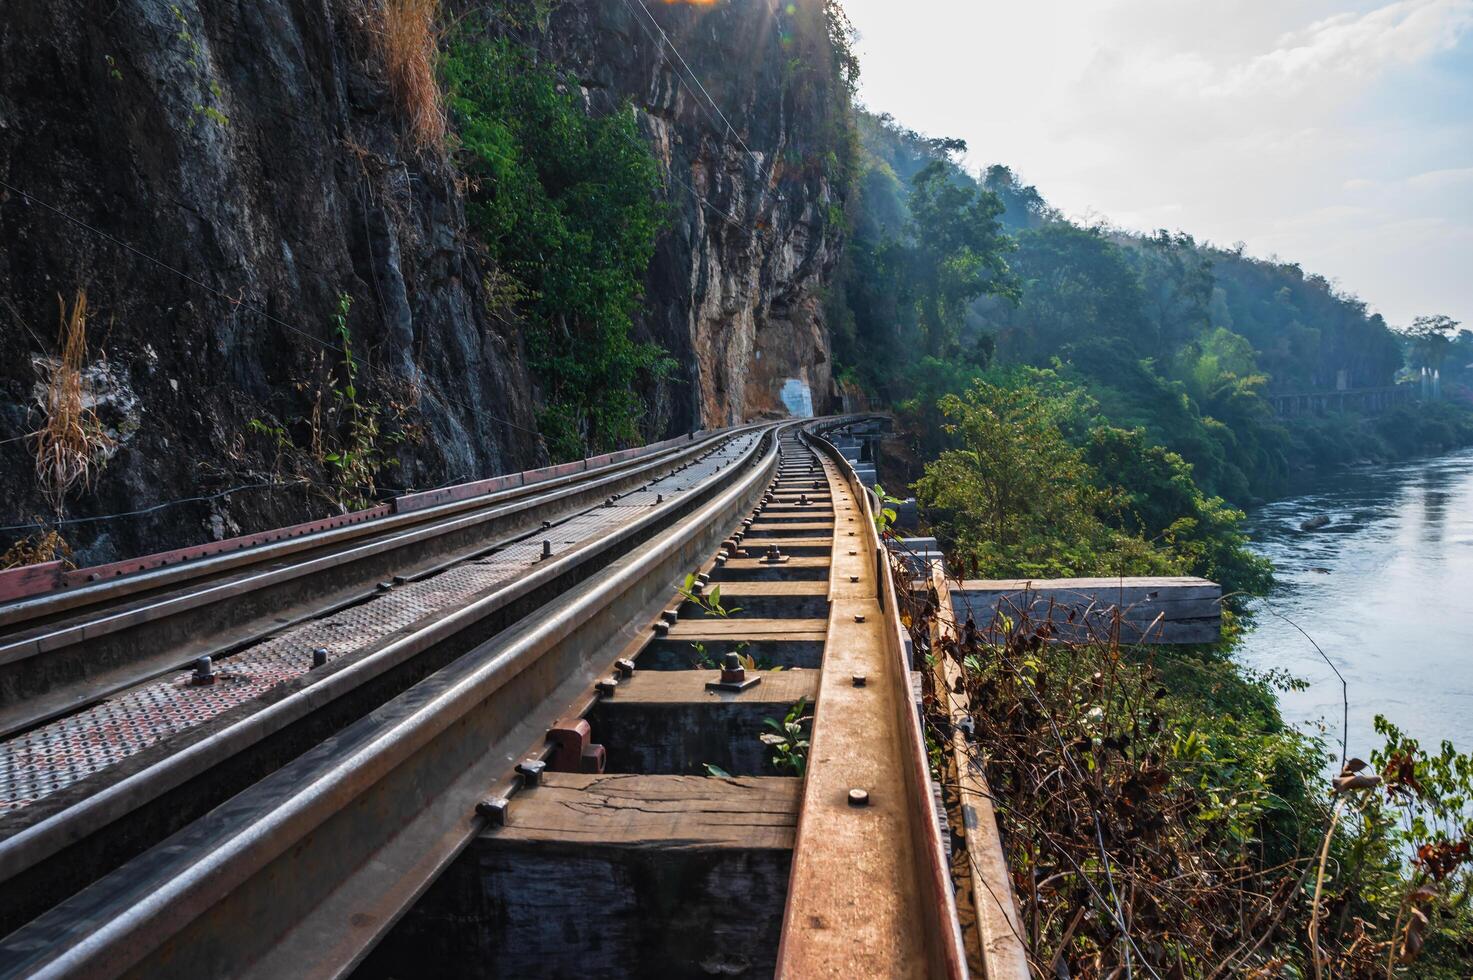 birmania ferrocarril a kanchanaburi.el birmania ferrocarril, además conocido como el muerte ferrocarril, , el tailandés birmania ferrocarril y similar nombres, es un 415 km foto